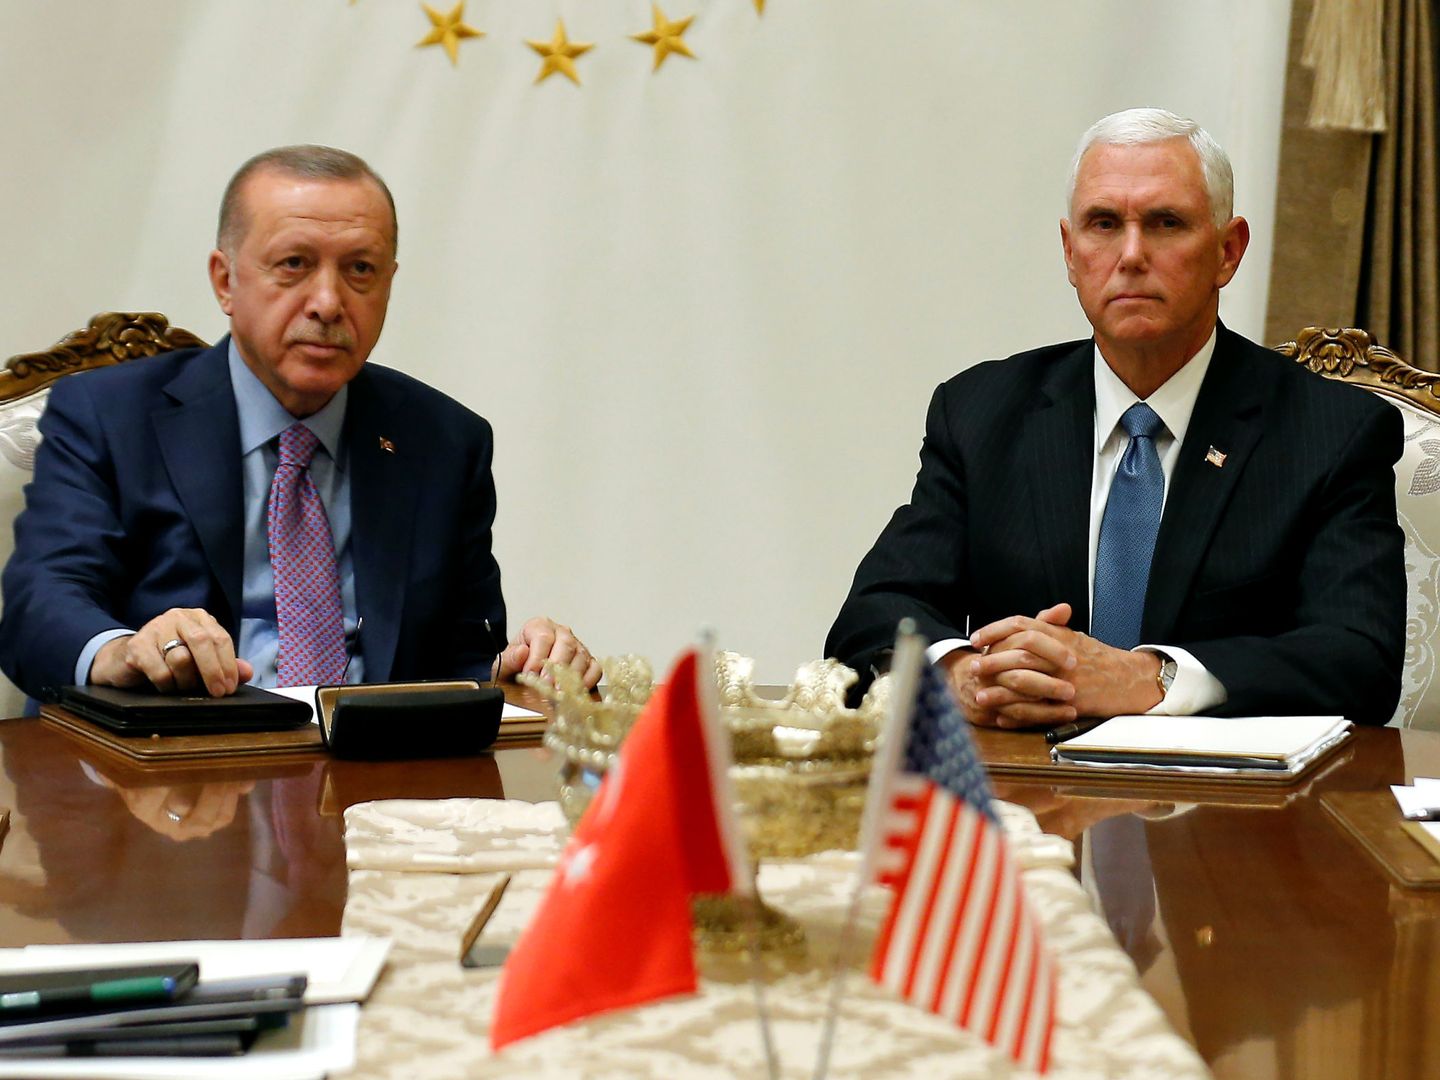 El vicepresidente de Estados Unidos, Mike Pence, reunido con el presidente turco, Tayyip Erdogan, en Ankara, Turquía. (Reuters) 